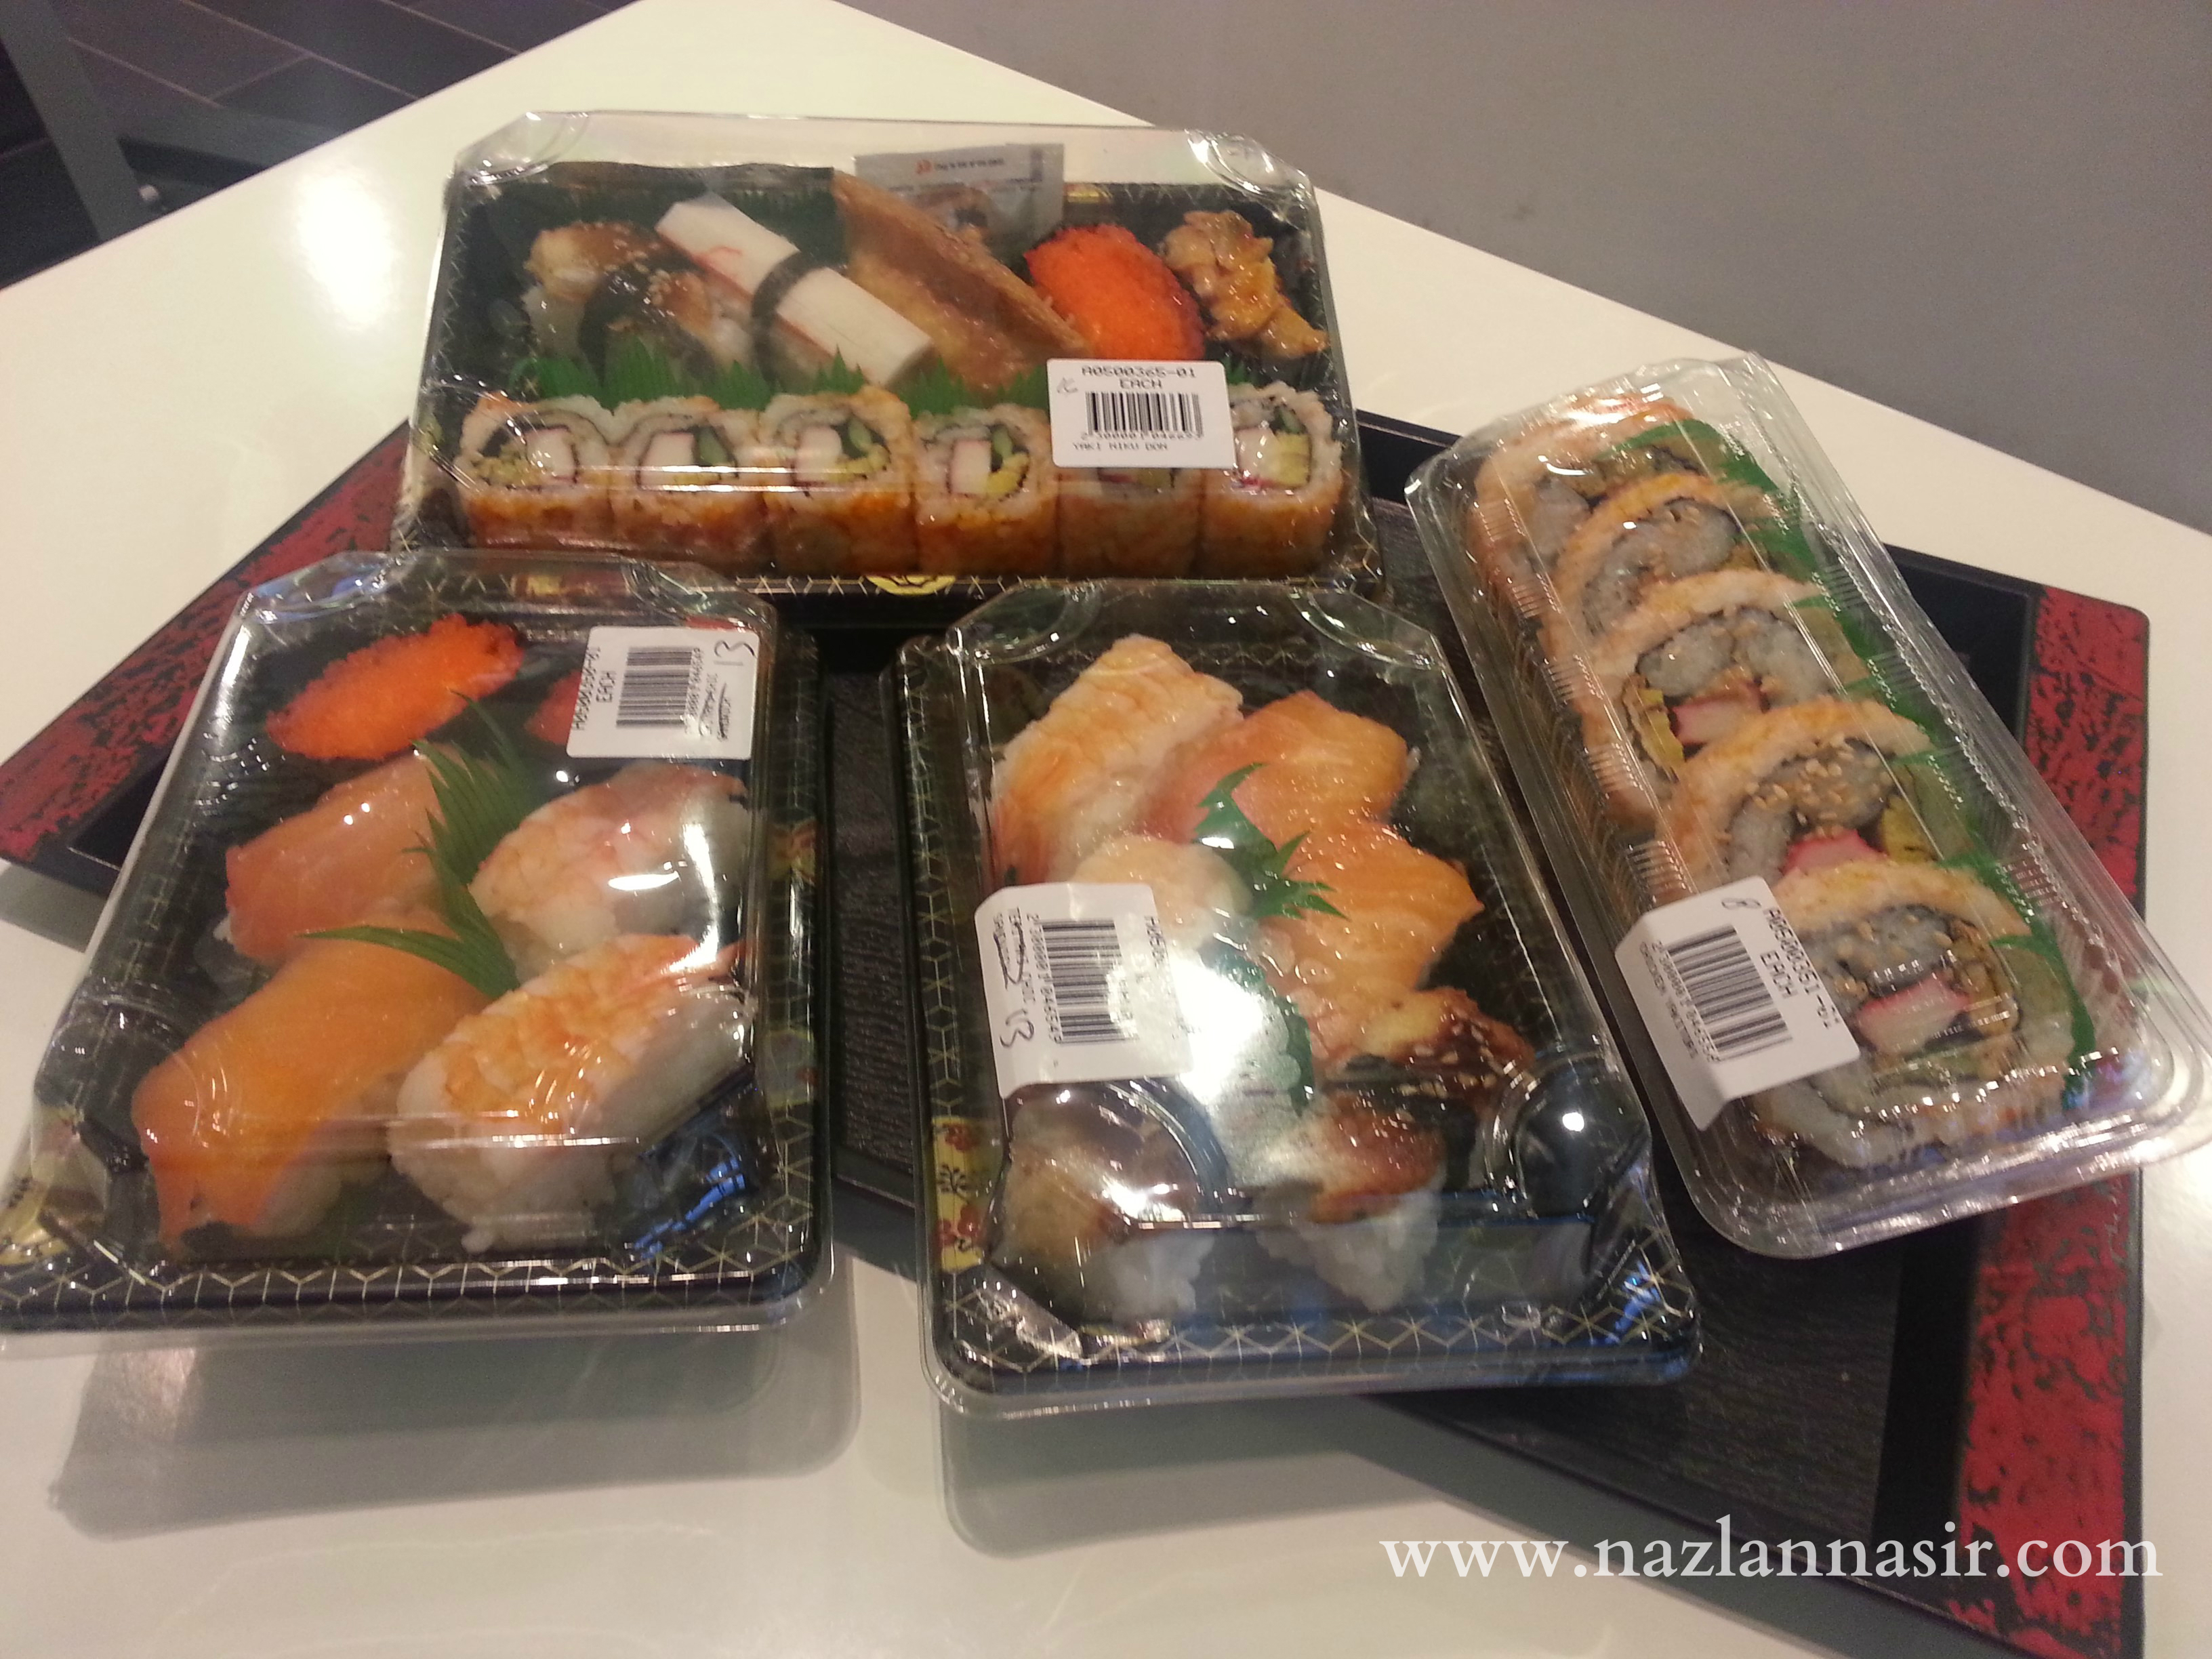 SAM's Deli Sushi Selections